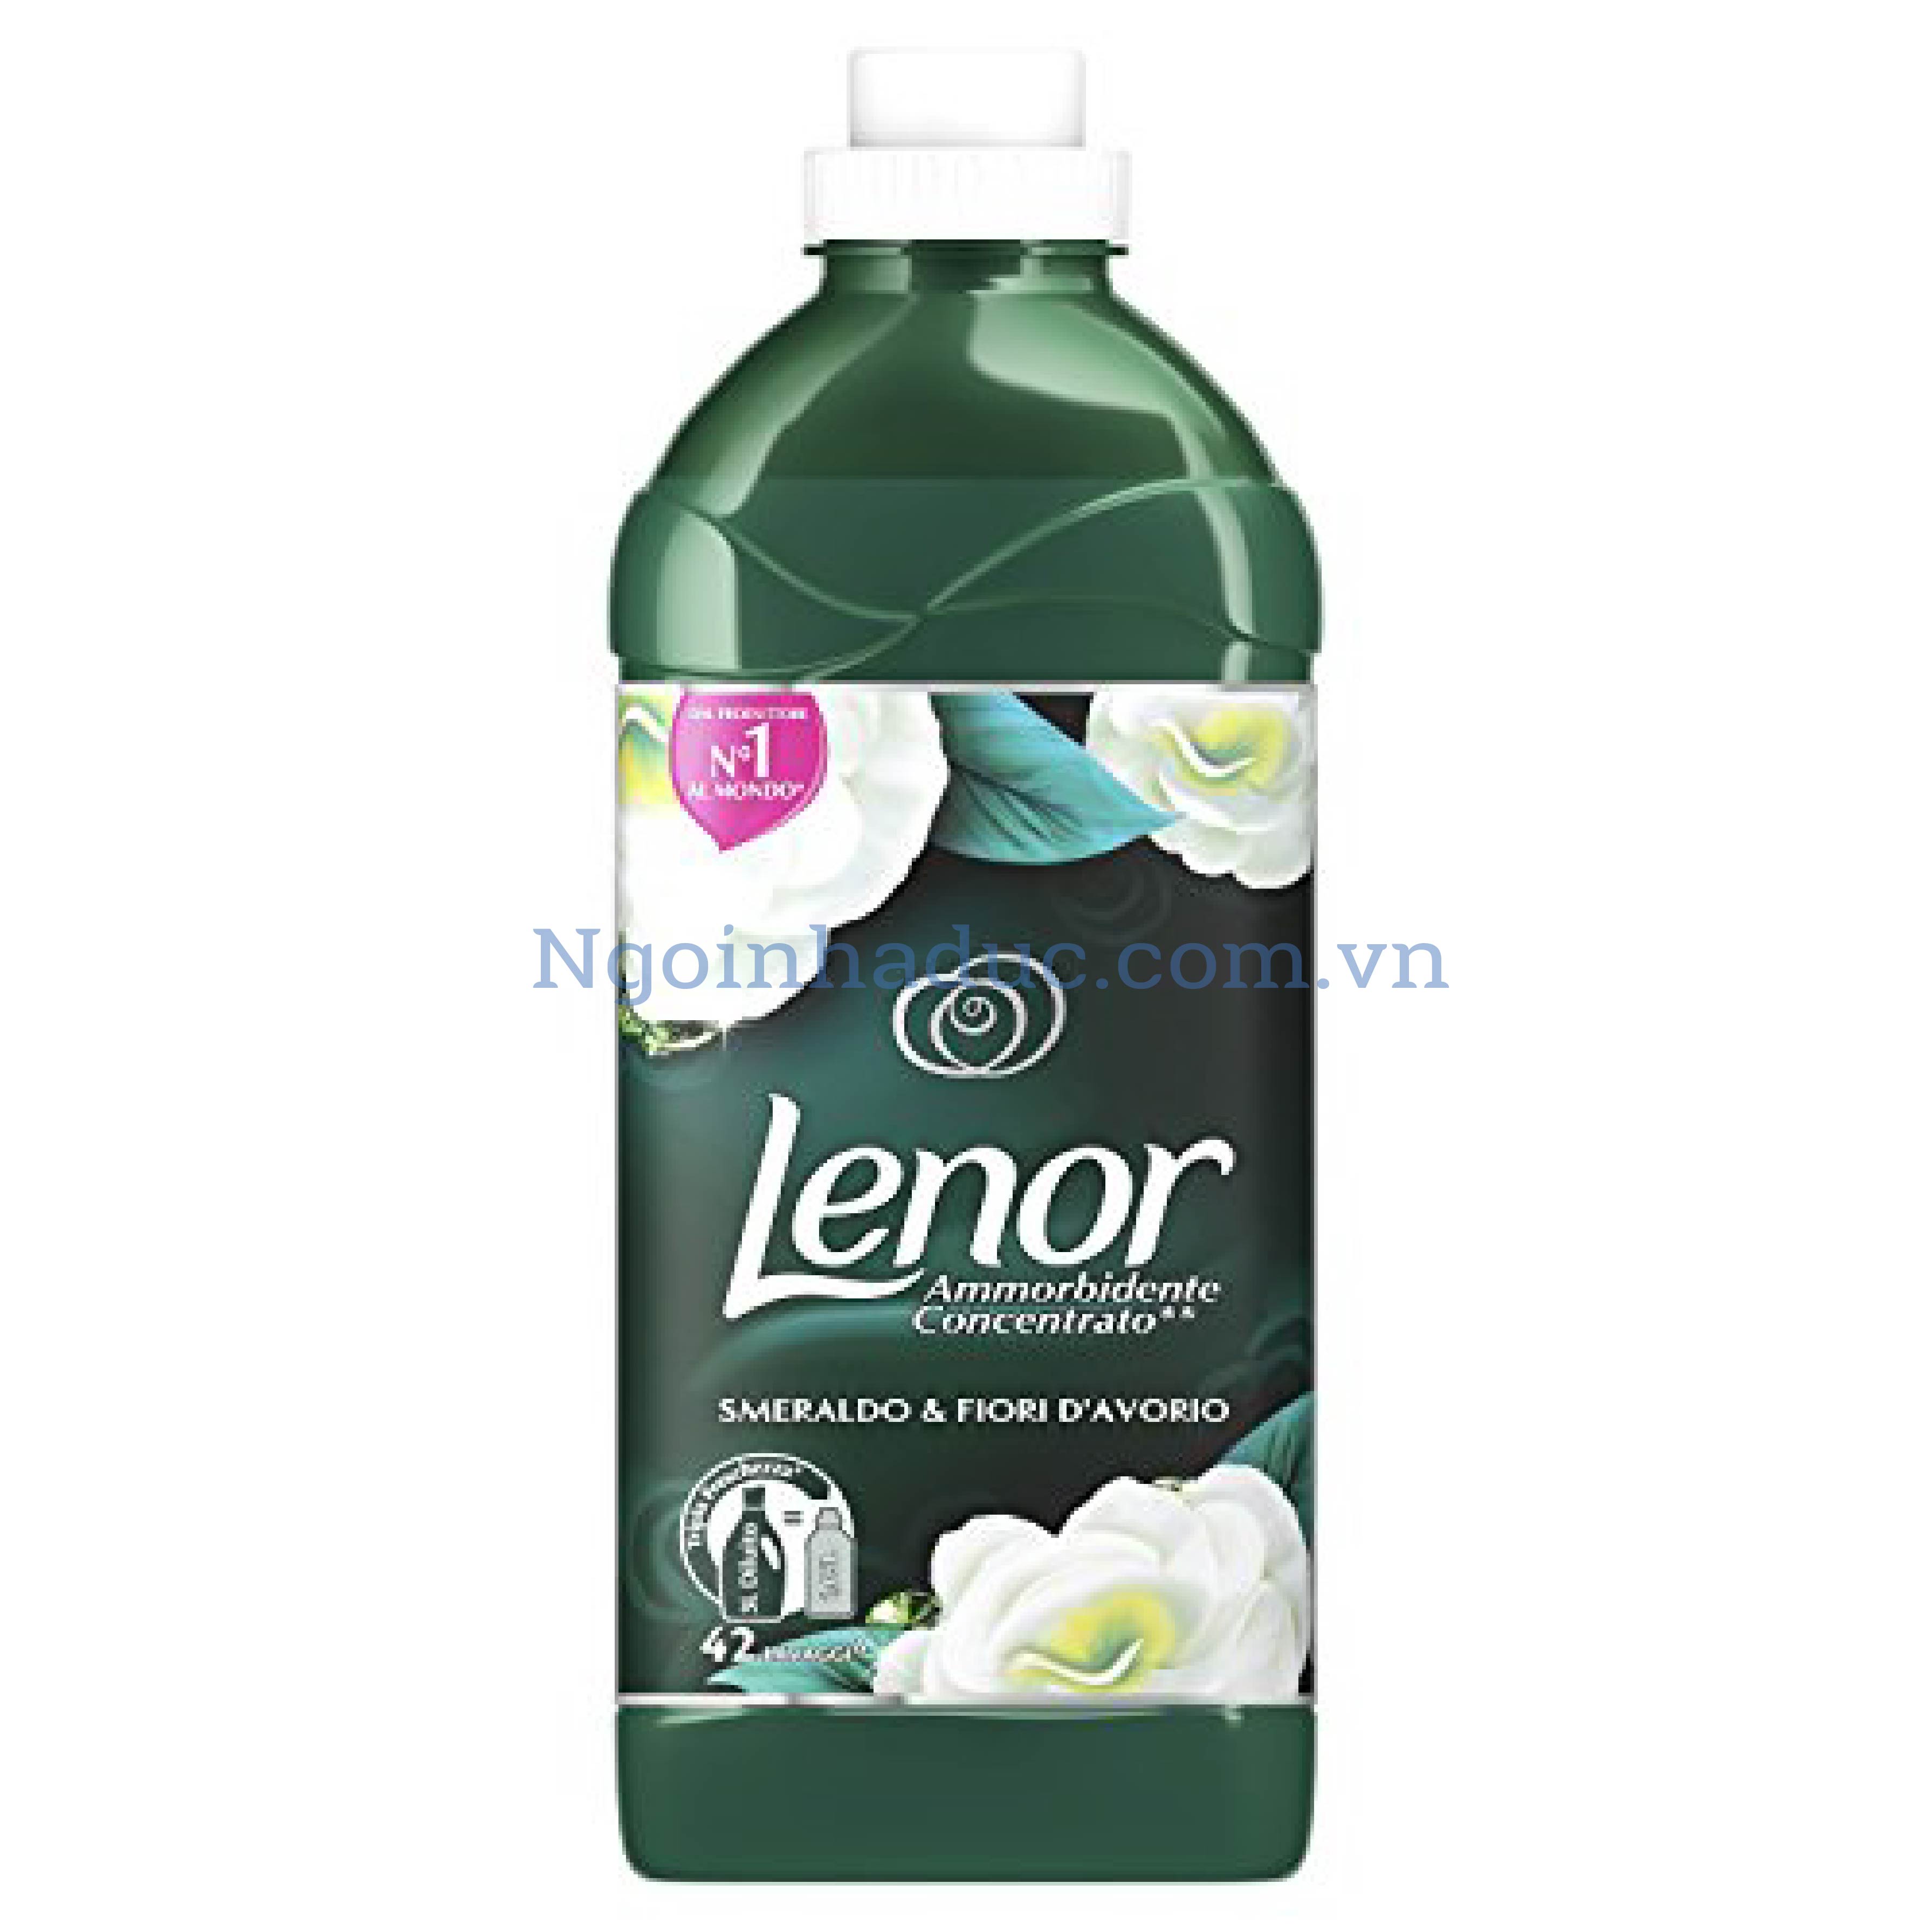 Nước xả vải Lenor 1.05L (màu xanh ngọc đậm)